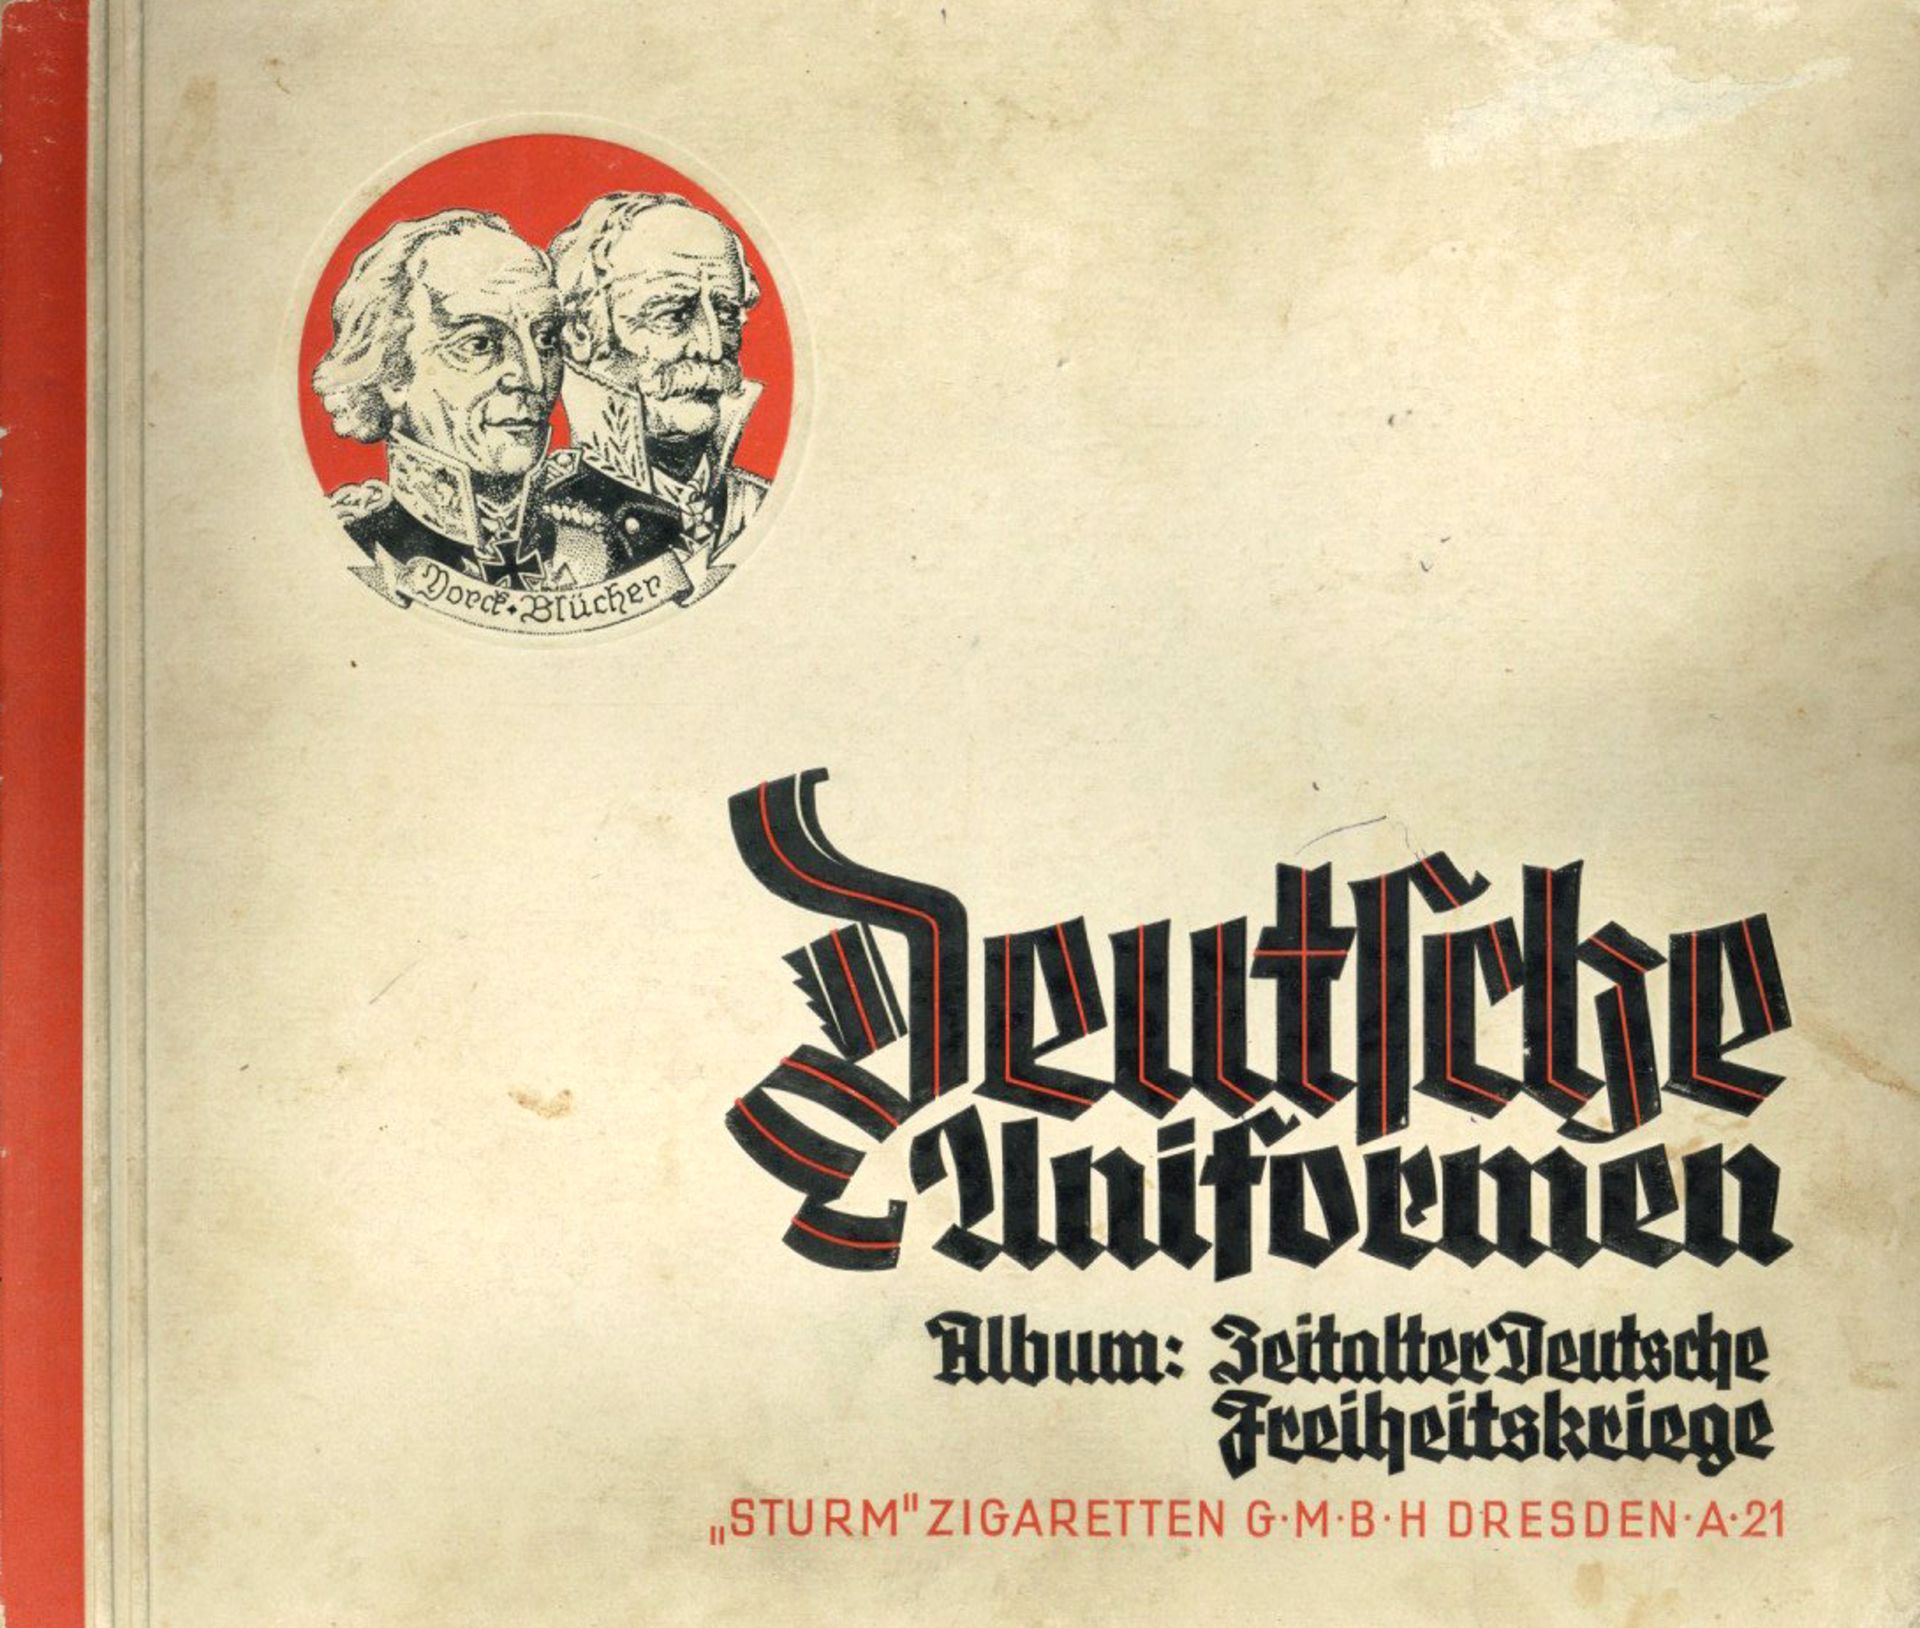 Sammelbild-Album Deutsche Uniformen Album: Zeitalter Deutsche Freiheitskriege, Verlag Sturm-